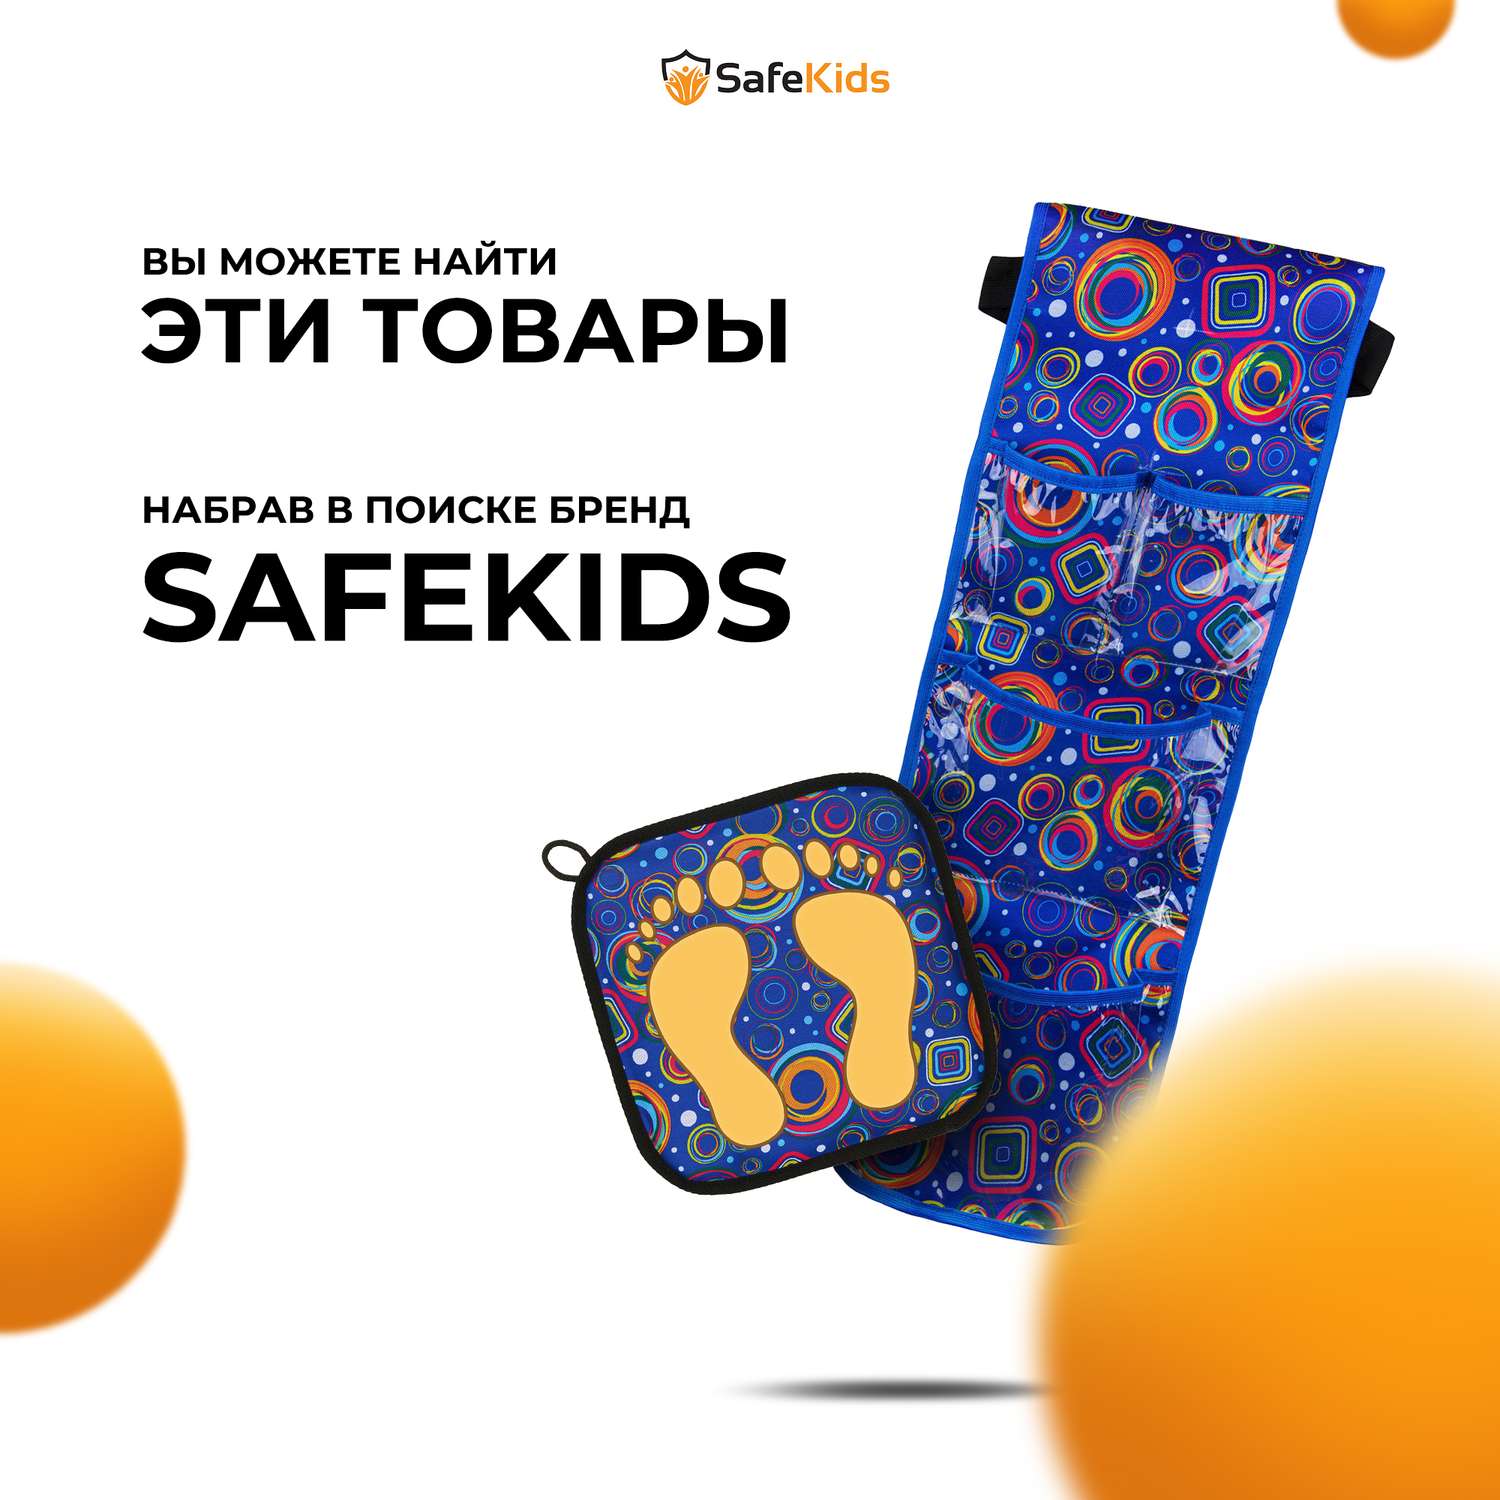 Органайзер Safekids c прозрачными кармашками в детский сад на шкафчик - фото 6